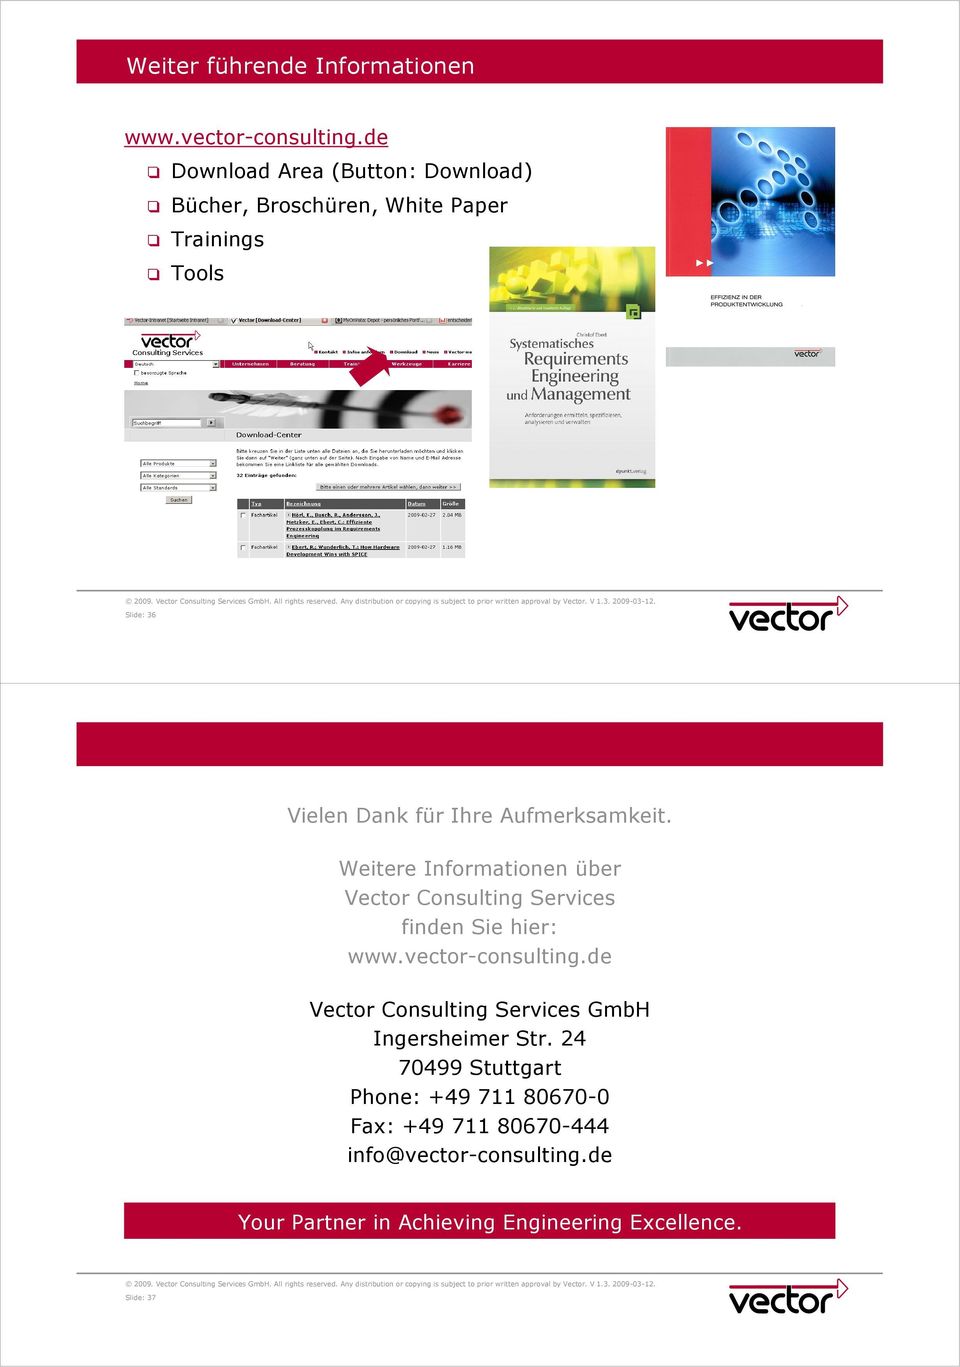 Aufmerksamkeit. Weitere Informationen über Vector Consulting Services finden Sie hier: www.vector-consulting.